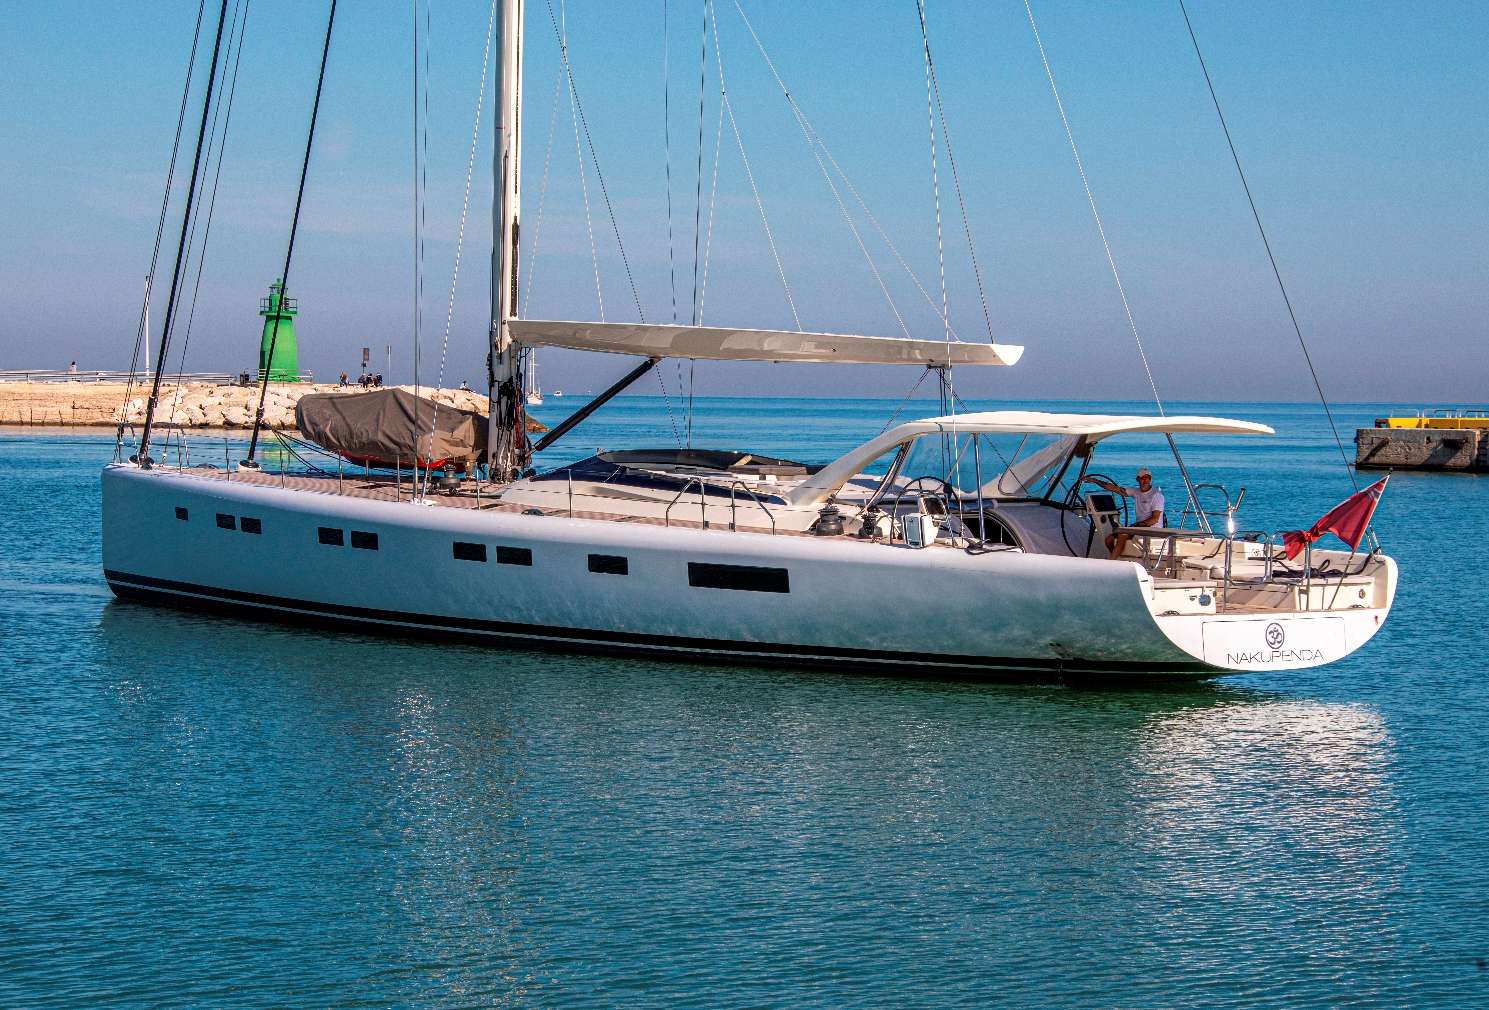 nakupenda - Yacht Charter Bocca di Magra & Boat hire in Fr. Riviera & Tyrrhenian Sea 1